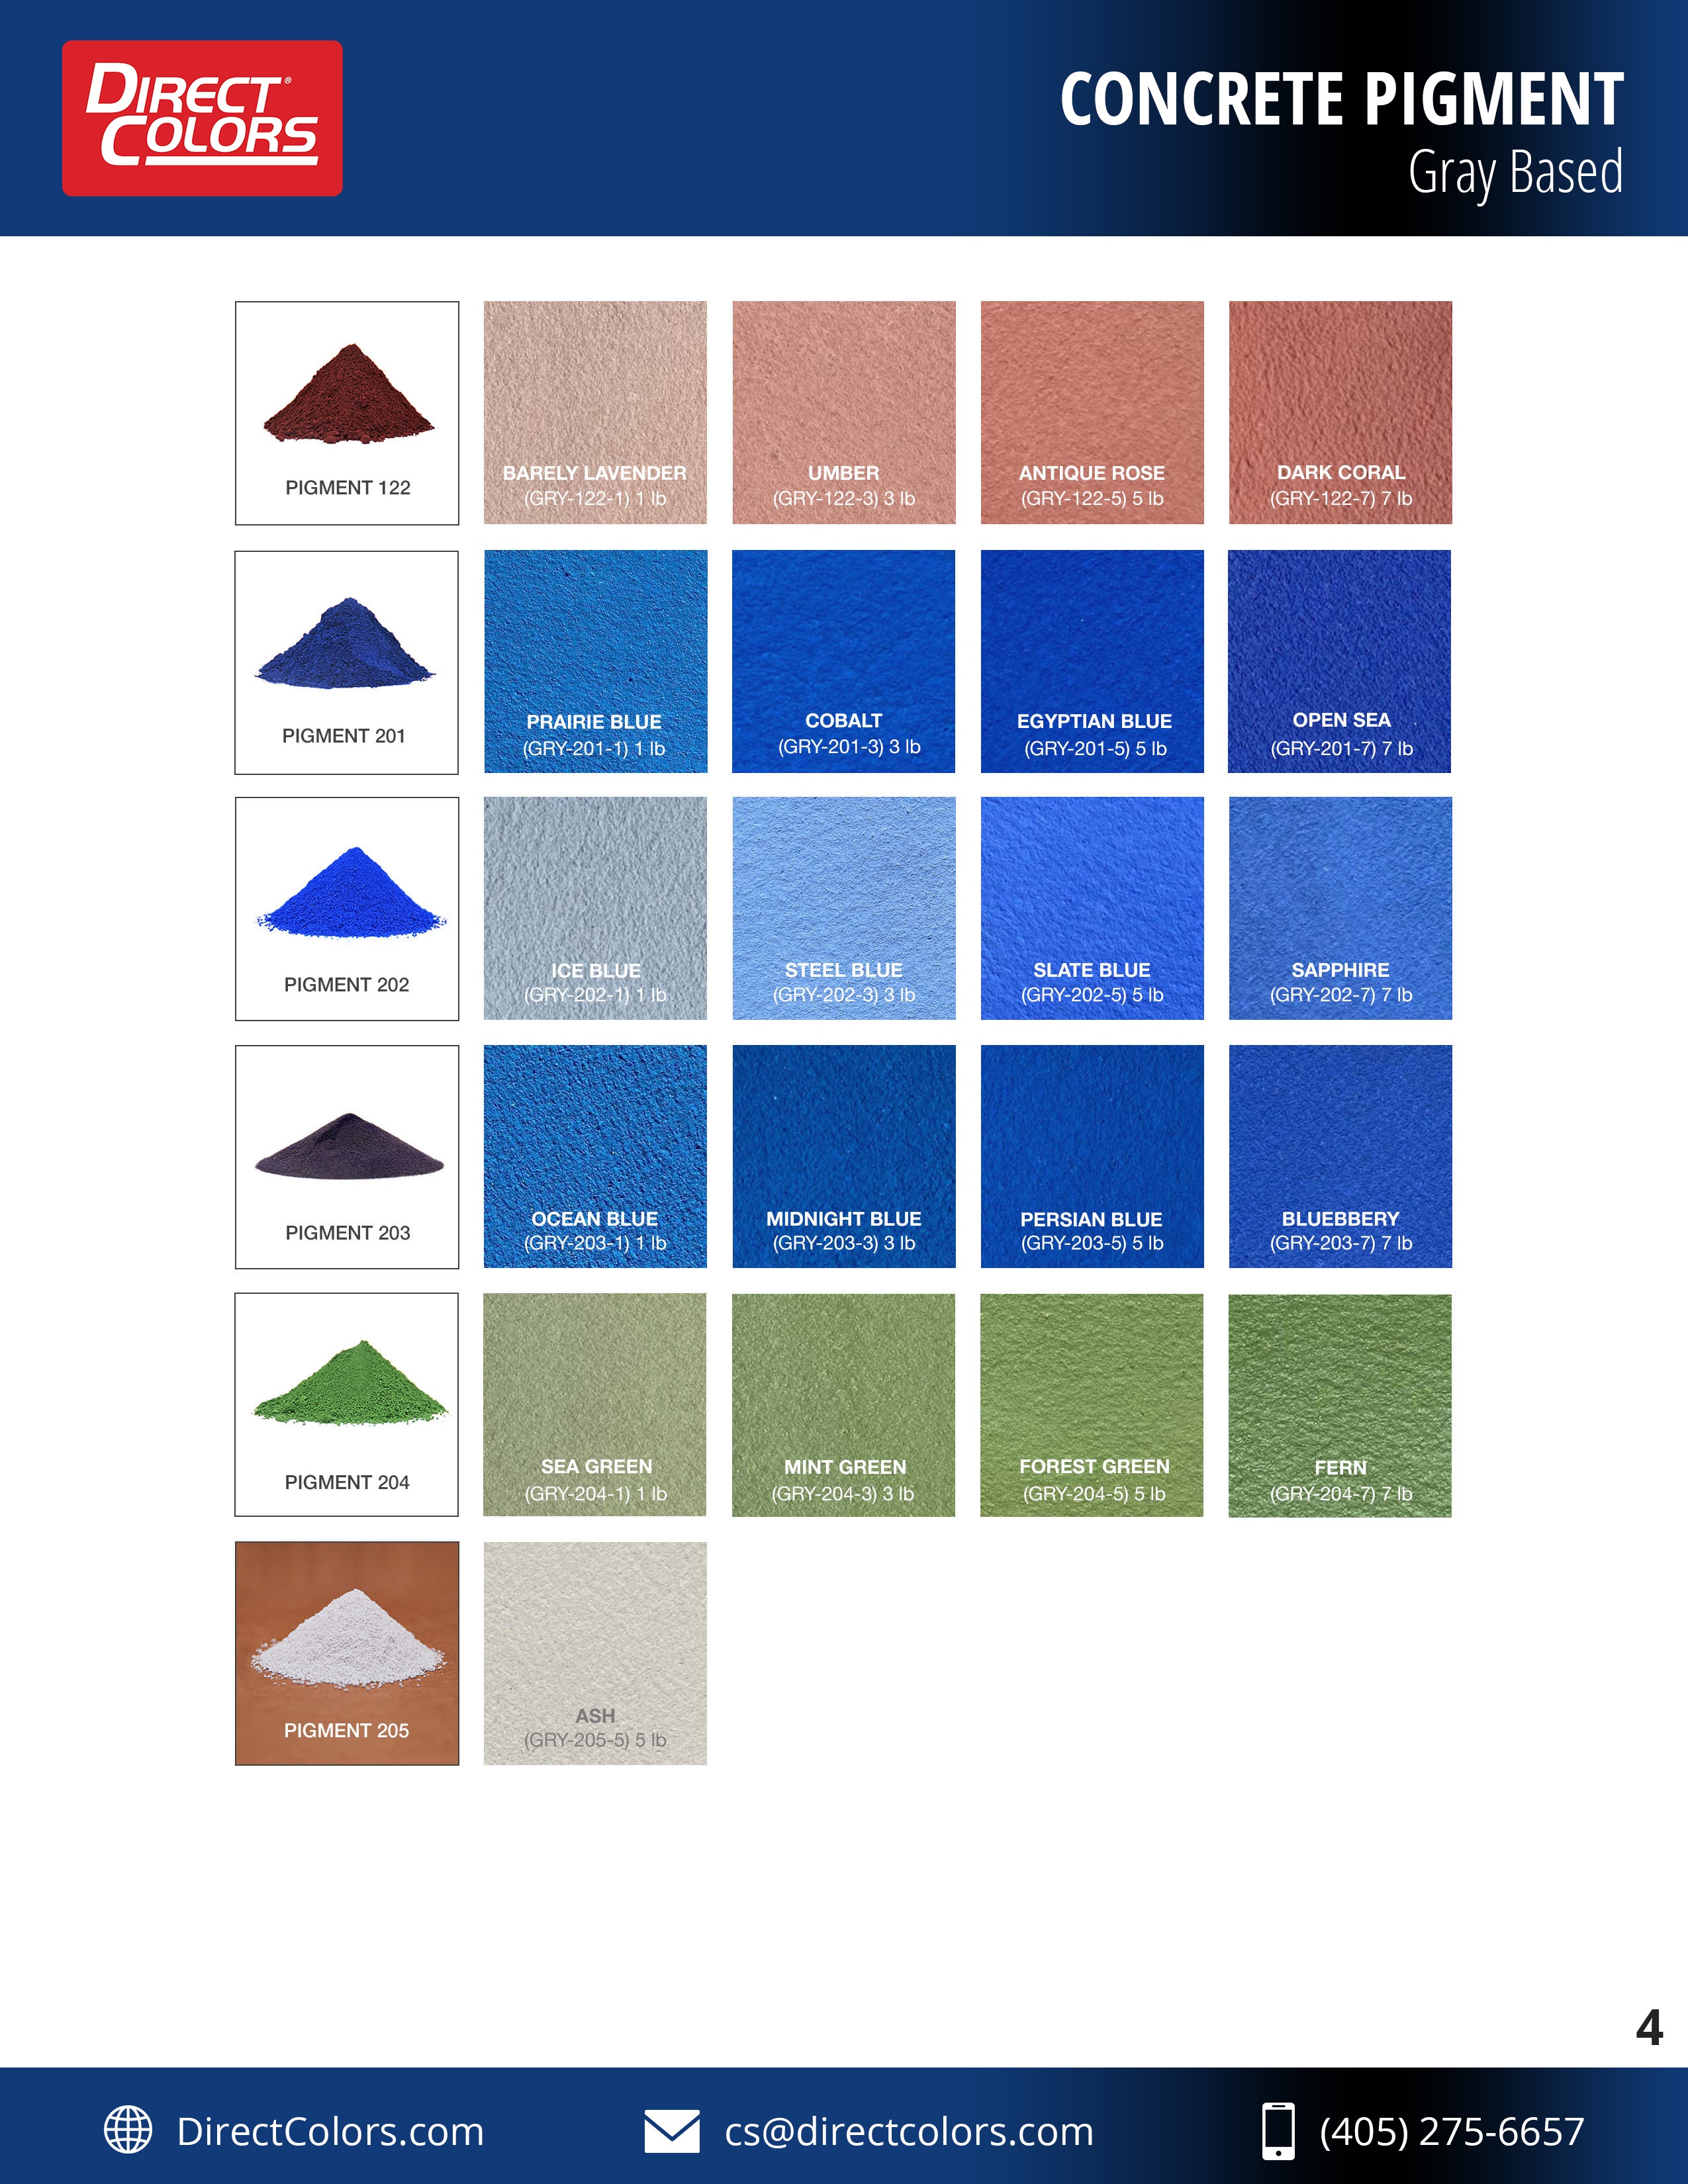 Our Range of Concrete Pigments